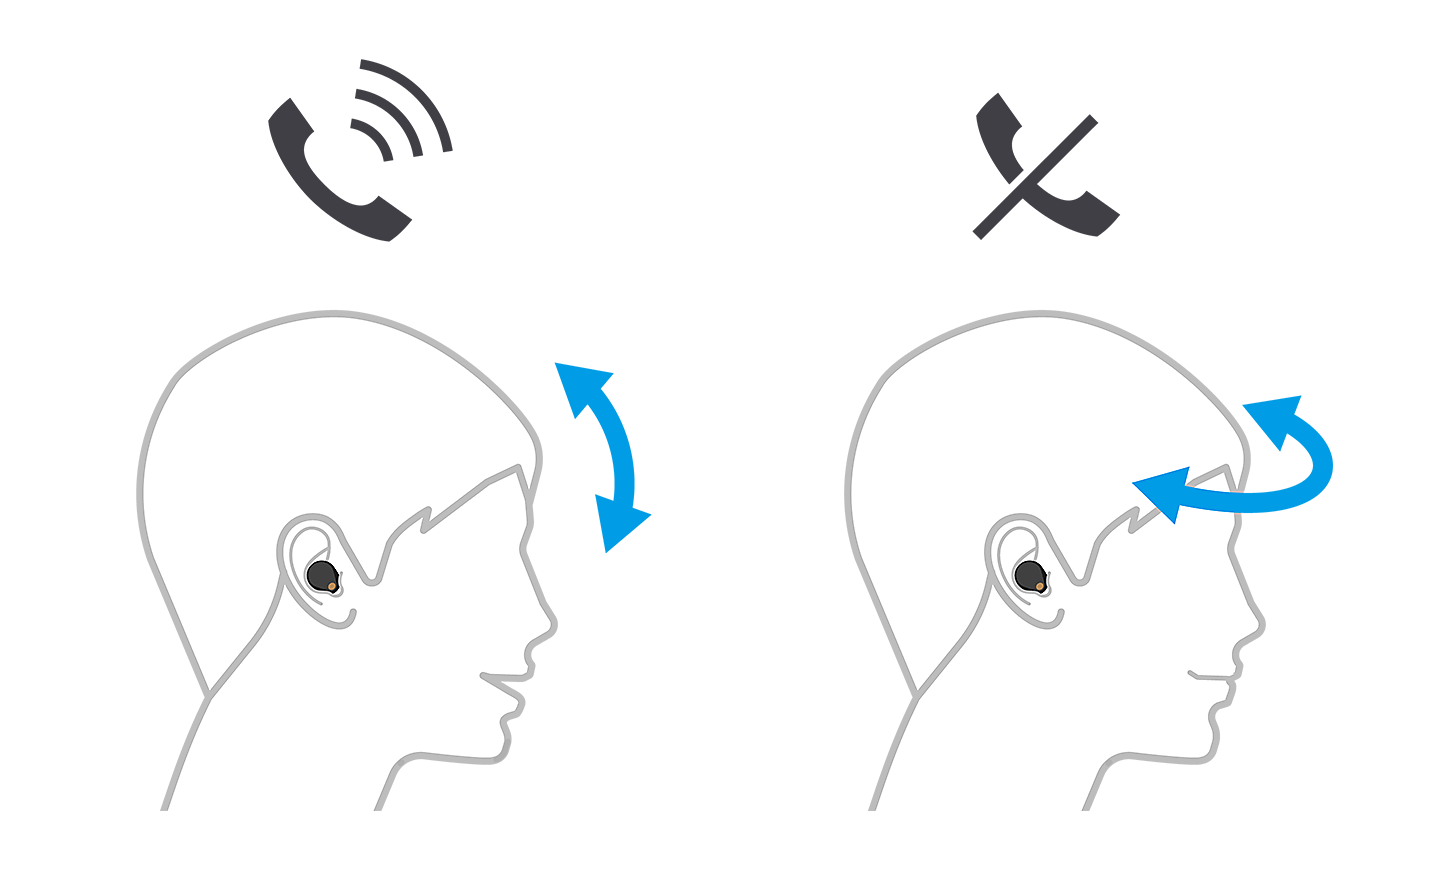 Зображення двох головок, ліва приймає виклик за допомогою стрілок вгору і вниз, права відхиляє виклик зі стрілками зліва направо